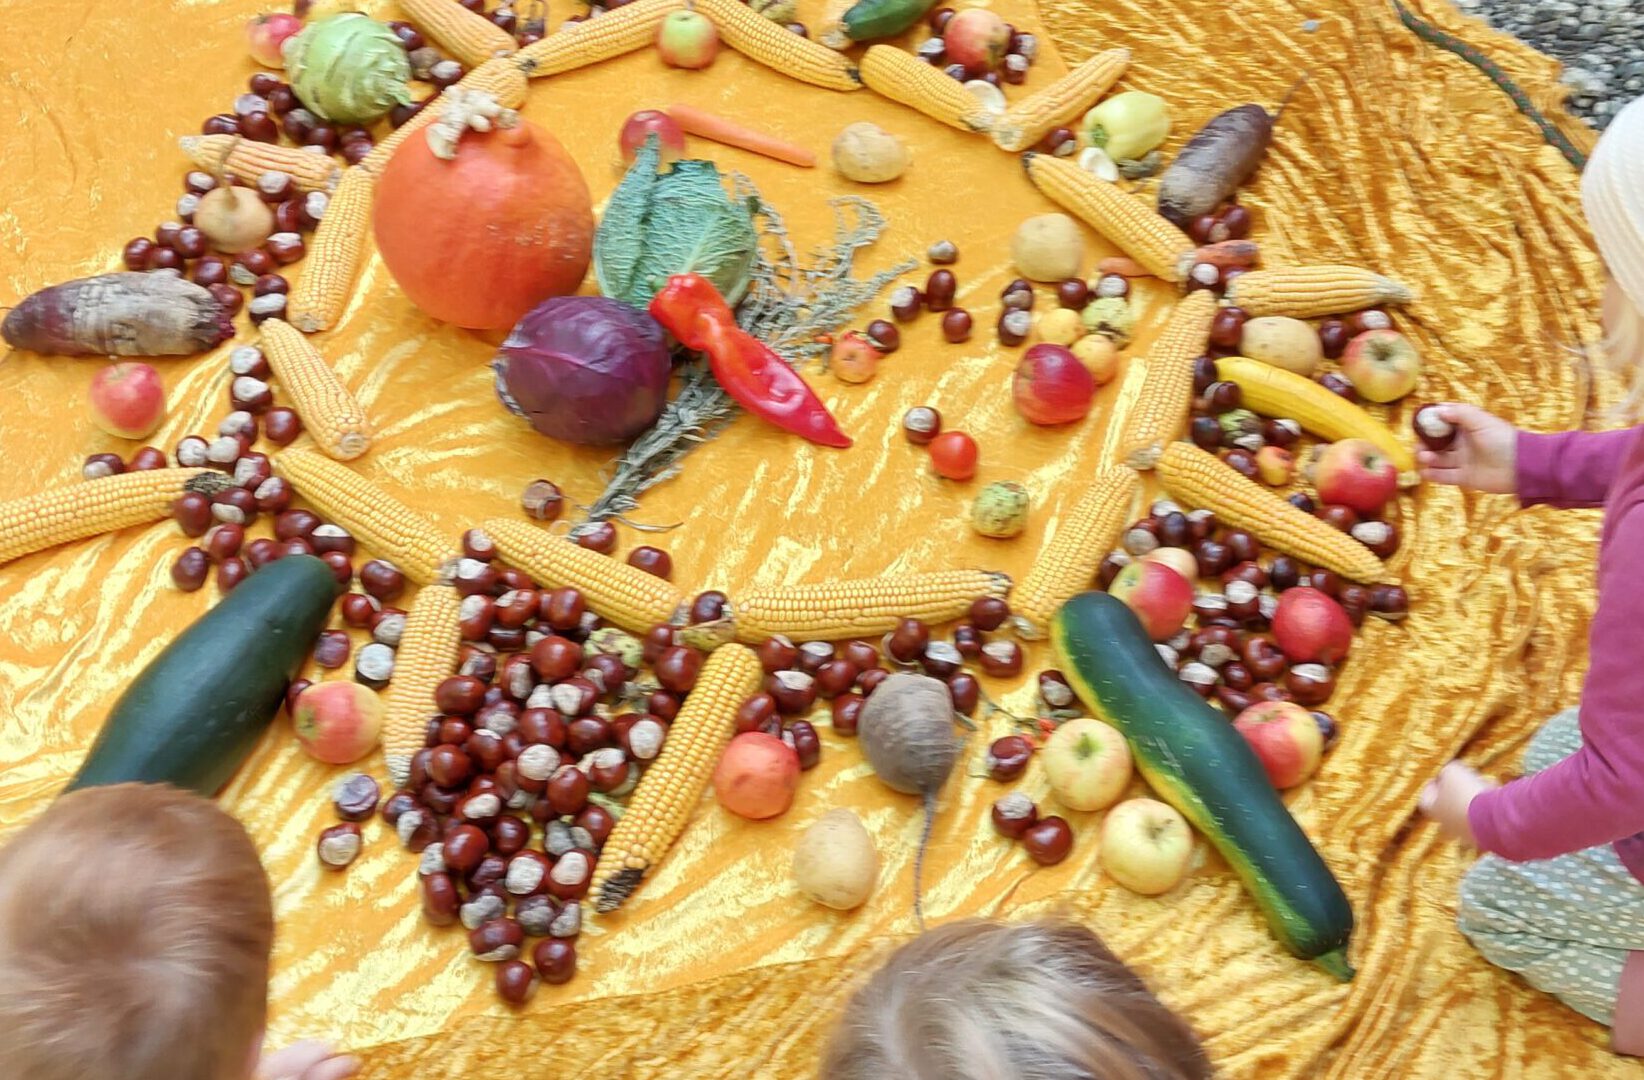 Auf einem sonnengelben Tuch legen wir ein Mosaik aus der mitgebrachten Ernte. Wir staunen wieviel bei uns alles wächst.